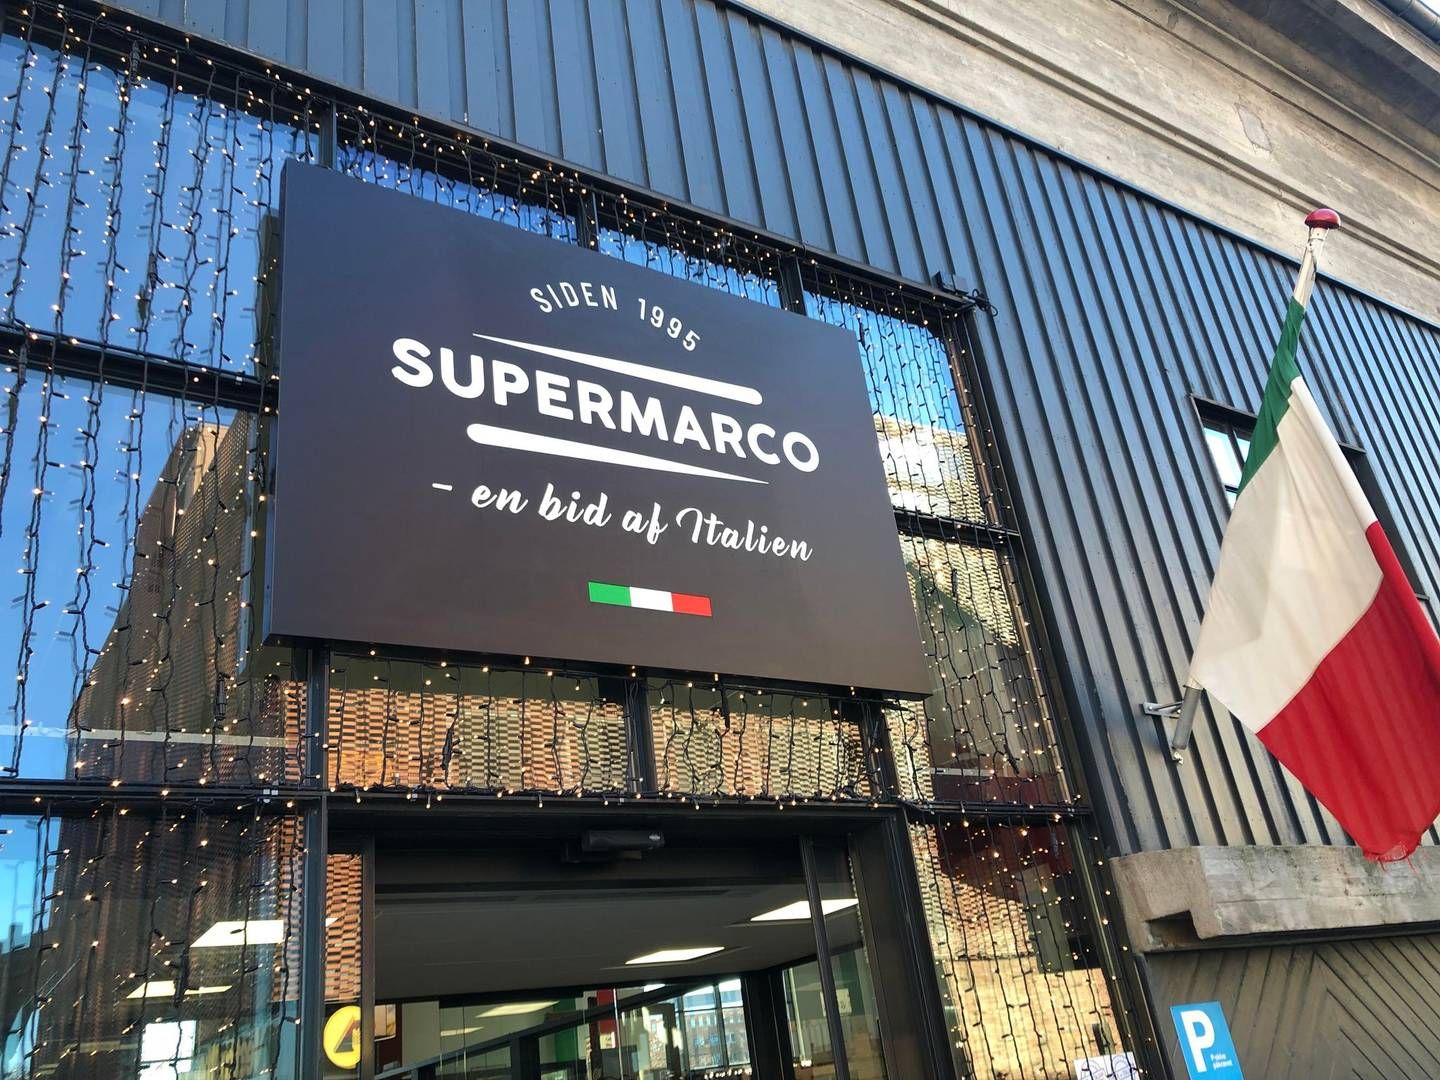 Supermarco har ét supermarked beliggende i Københavns Sydhavn. Butikken går under navnet "Det Italienske Madtempel." | Foto: Alexander Thorup/detailwatch